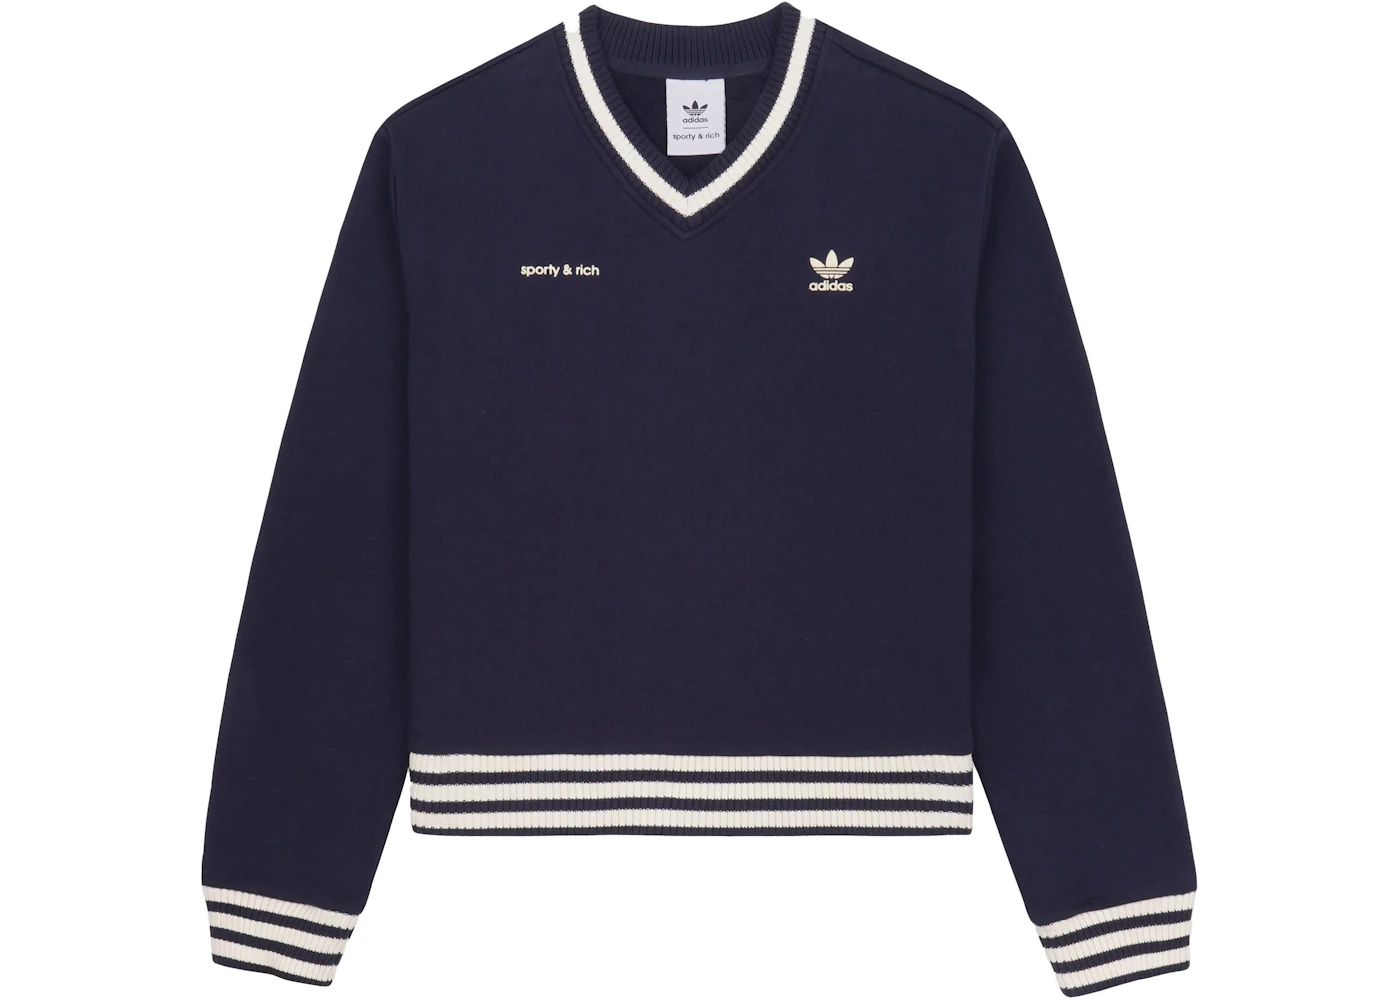 x Sporty & V-Neck Sweatshirt Navy/Cream - SS23 - US